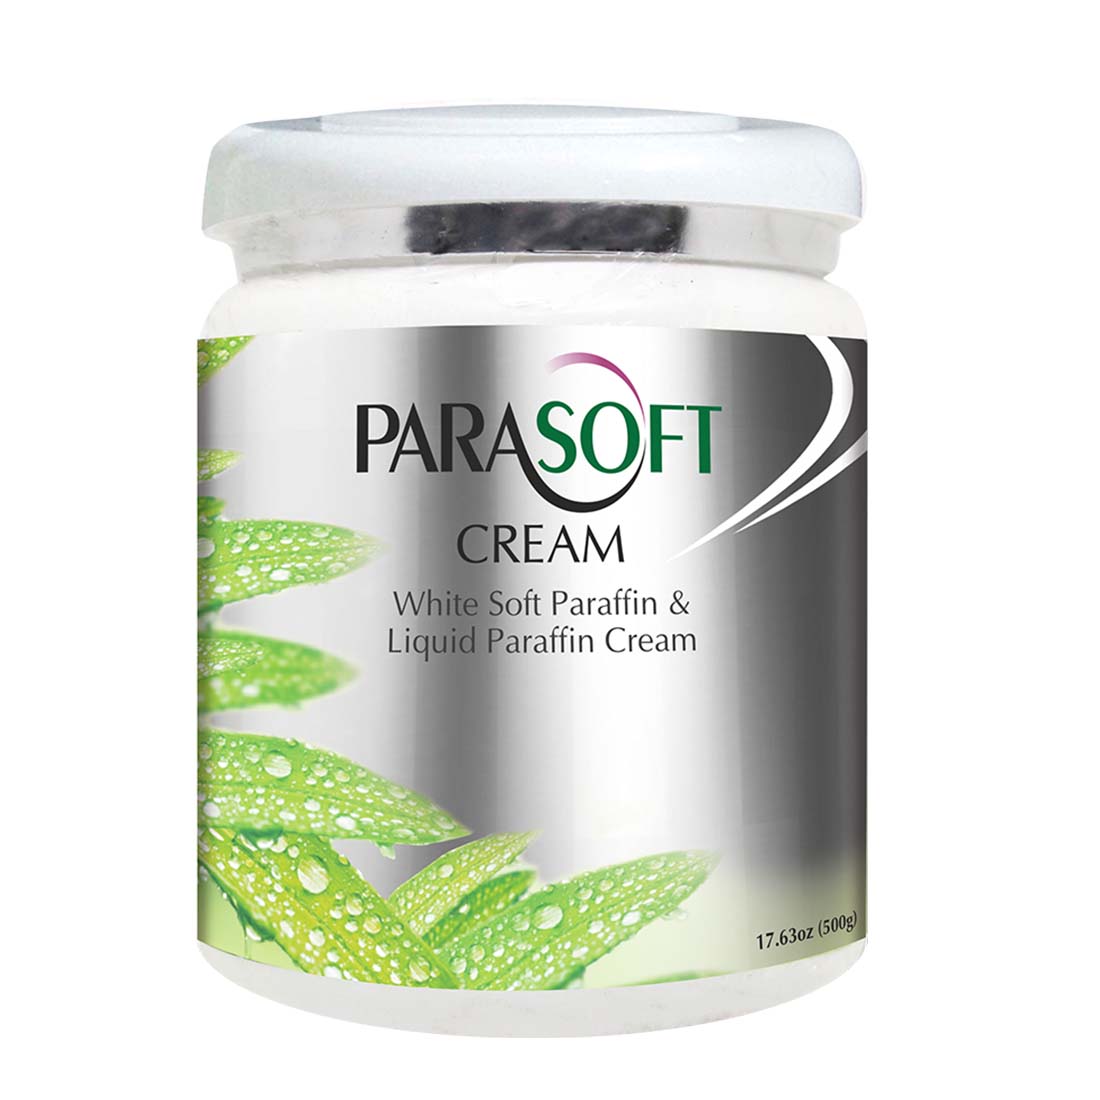 Parasoft cream 500g